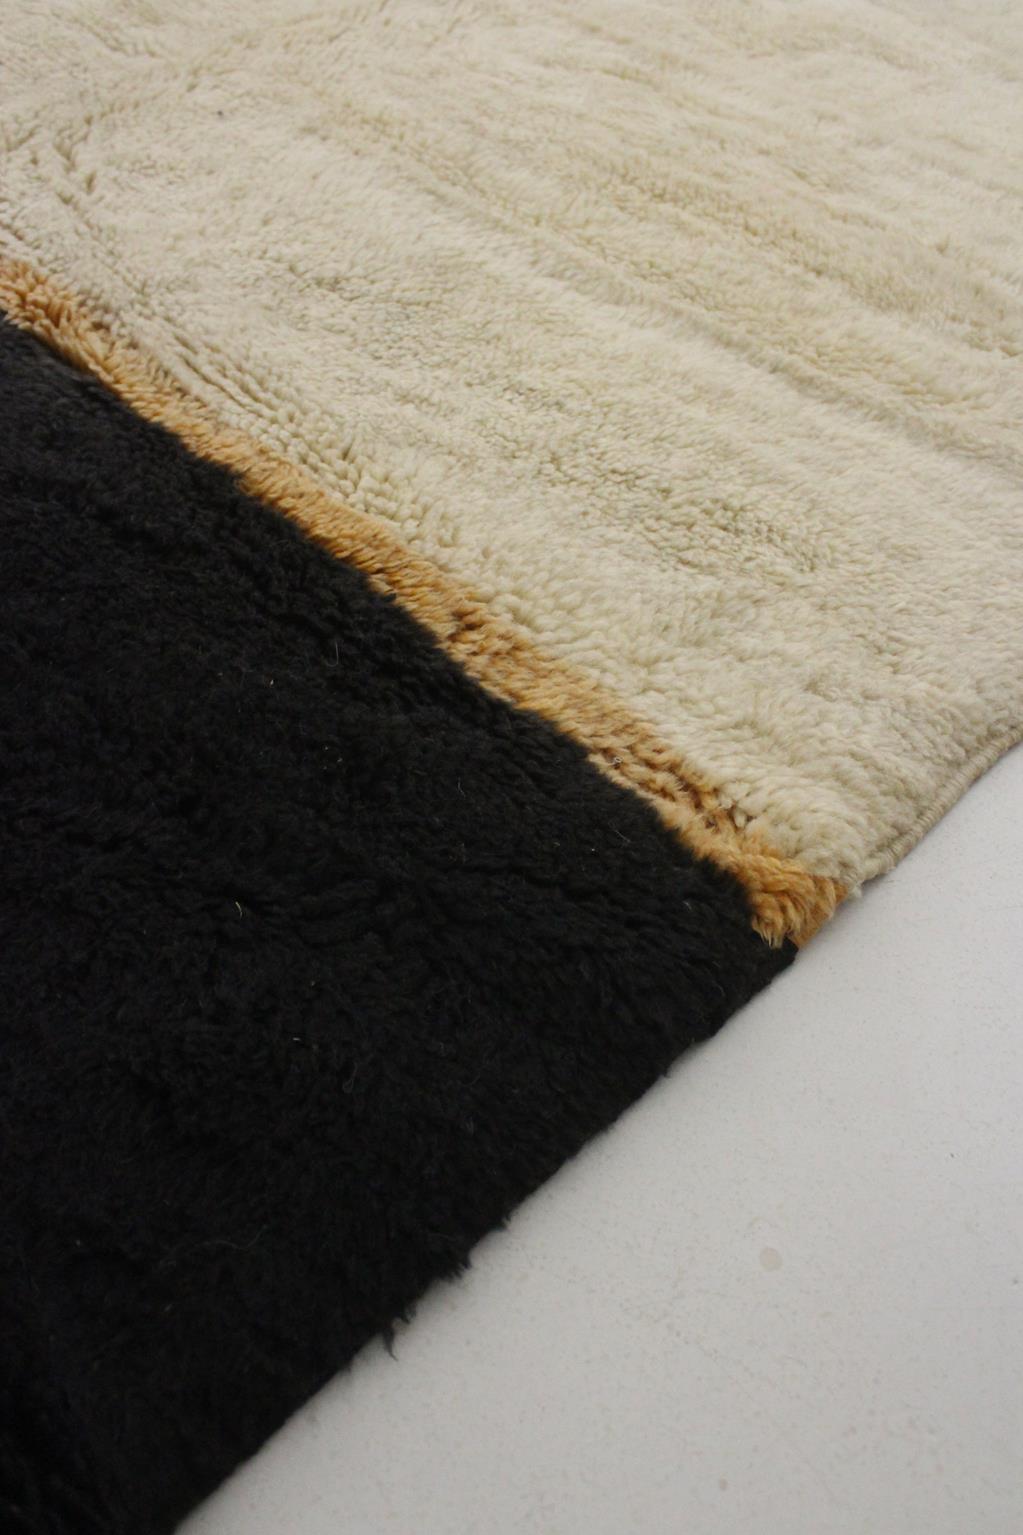 Scandinavian Modern Contemporary Moroccan wool Mrirt rug - Beige/black - 8.2x10.6feet / 252x325cm For Sale